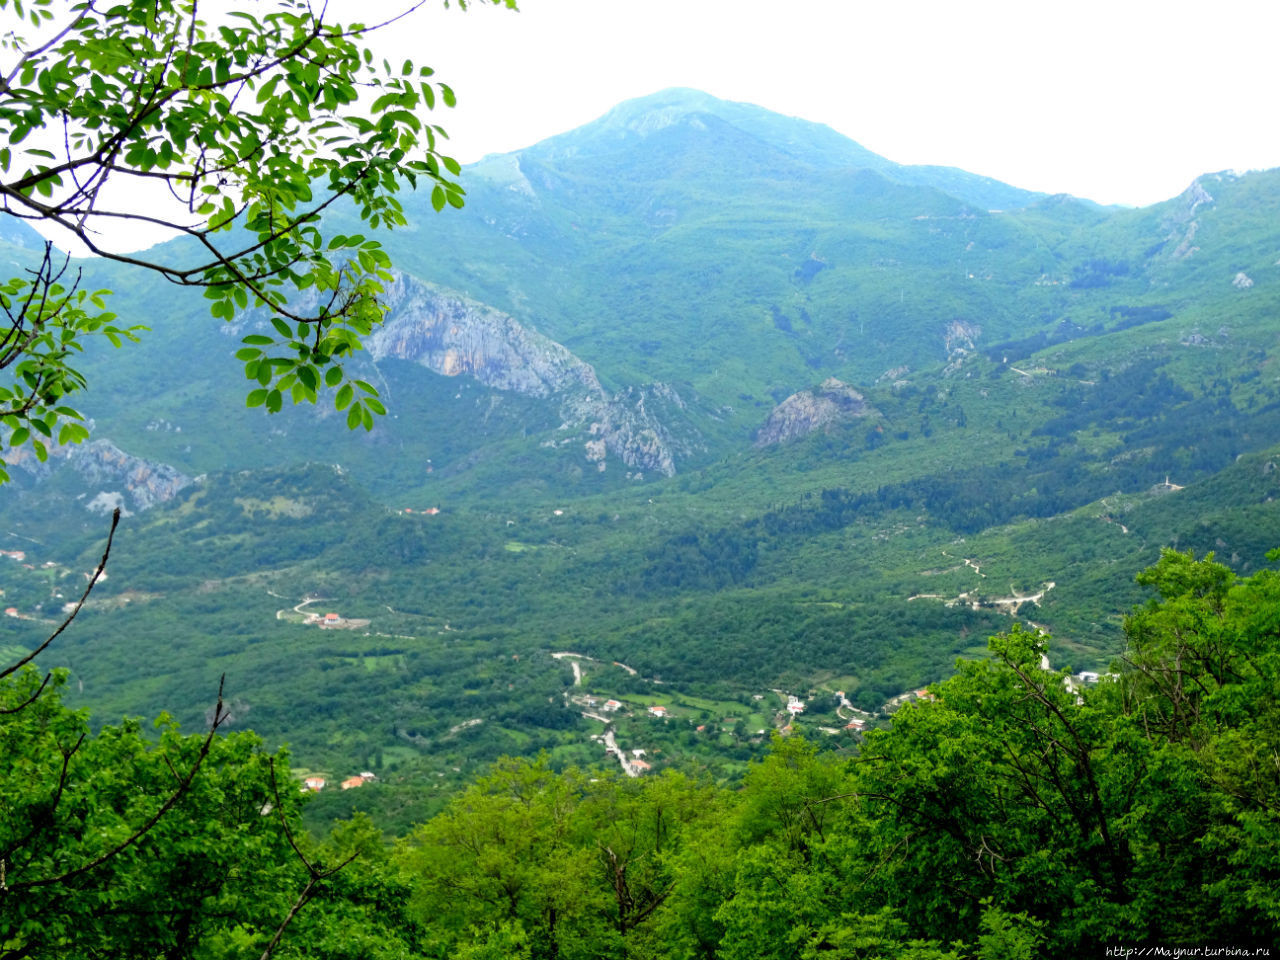 Черногорская  приморская горная тропа. Спуск к озеру... Бар, Черногория